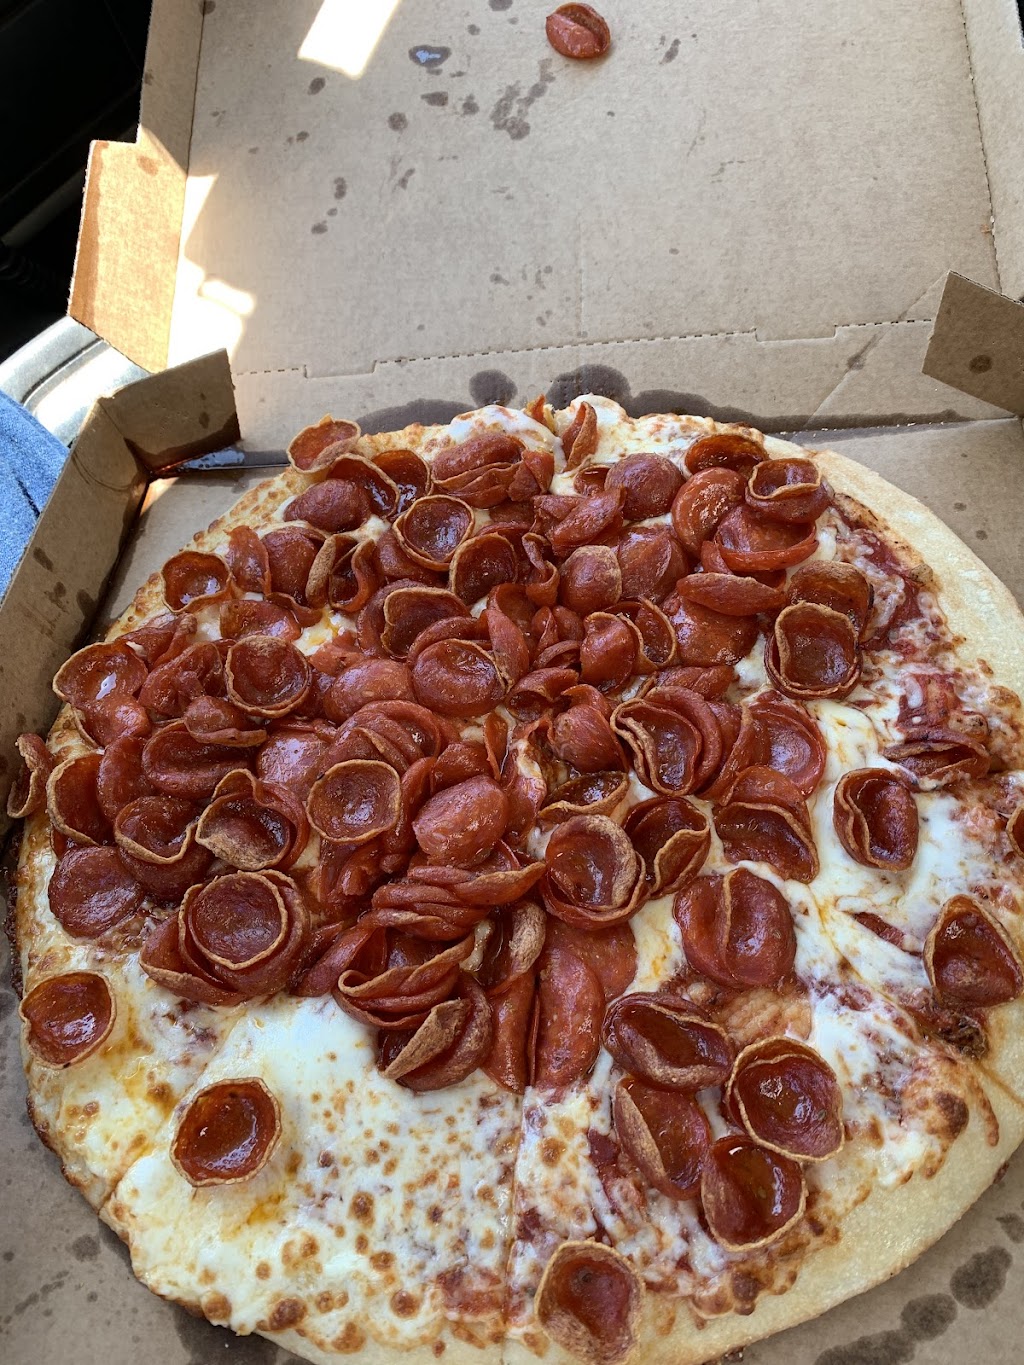 Little Caesars Pizza | 7951 Villa Rica Hwy, Dallas, GA 30157, USA | Phone: (770) 456-0992